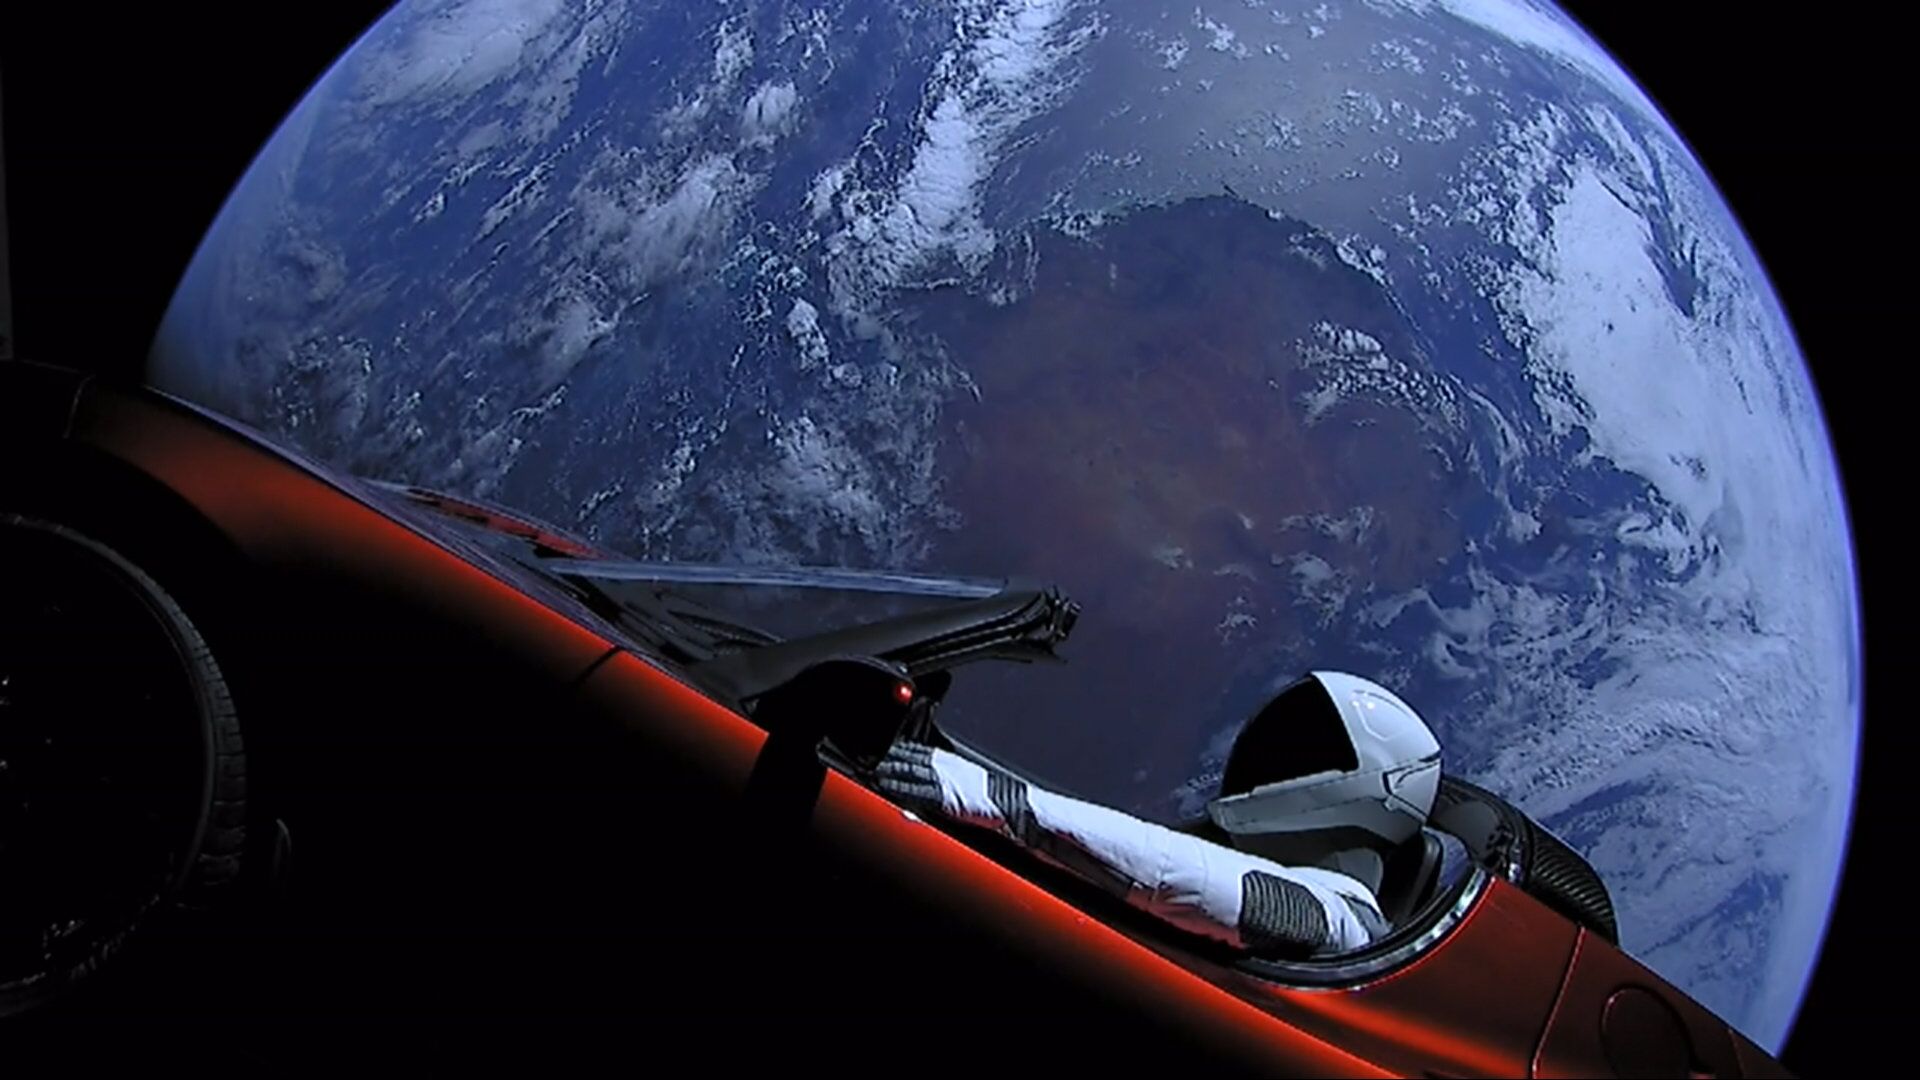 Личный автомобиль главы SpaceX Илона Маска красный кабриолет Tesla Roadster, выведенный на орбиту ракето-носителем Falcon Heavy американской компании SpaceX, с манекеном в скафандре за рулем в космическом пространстве - РИА Новости, 1920, 21.08.2020